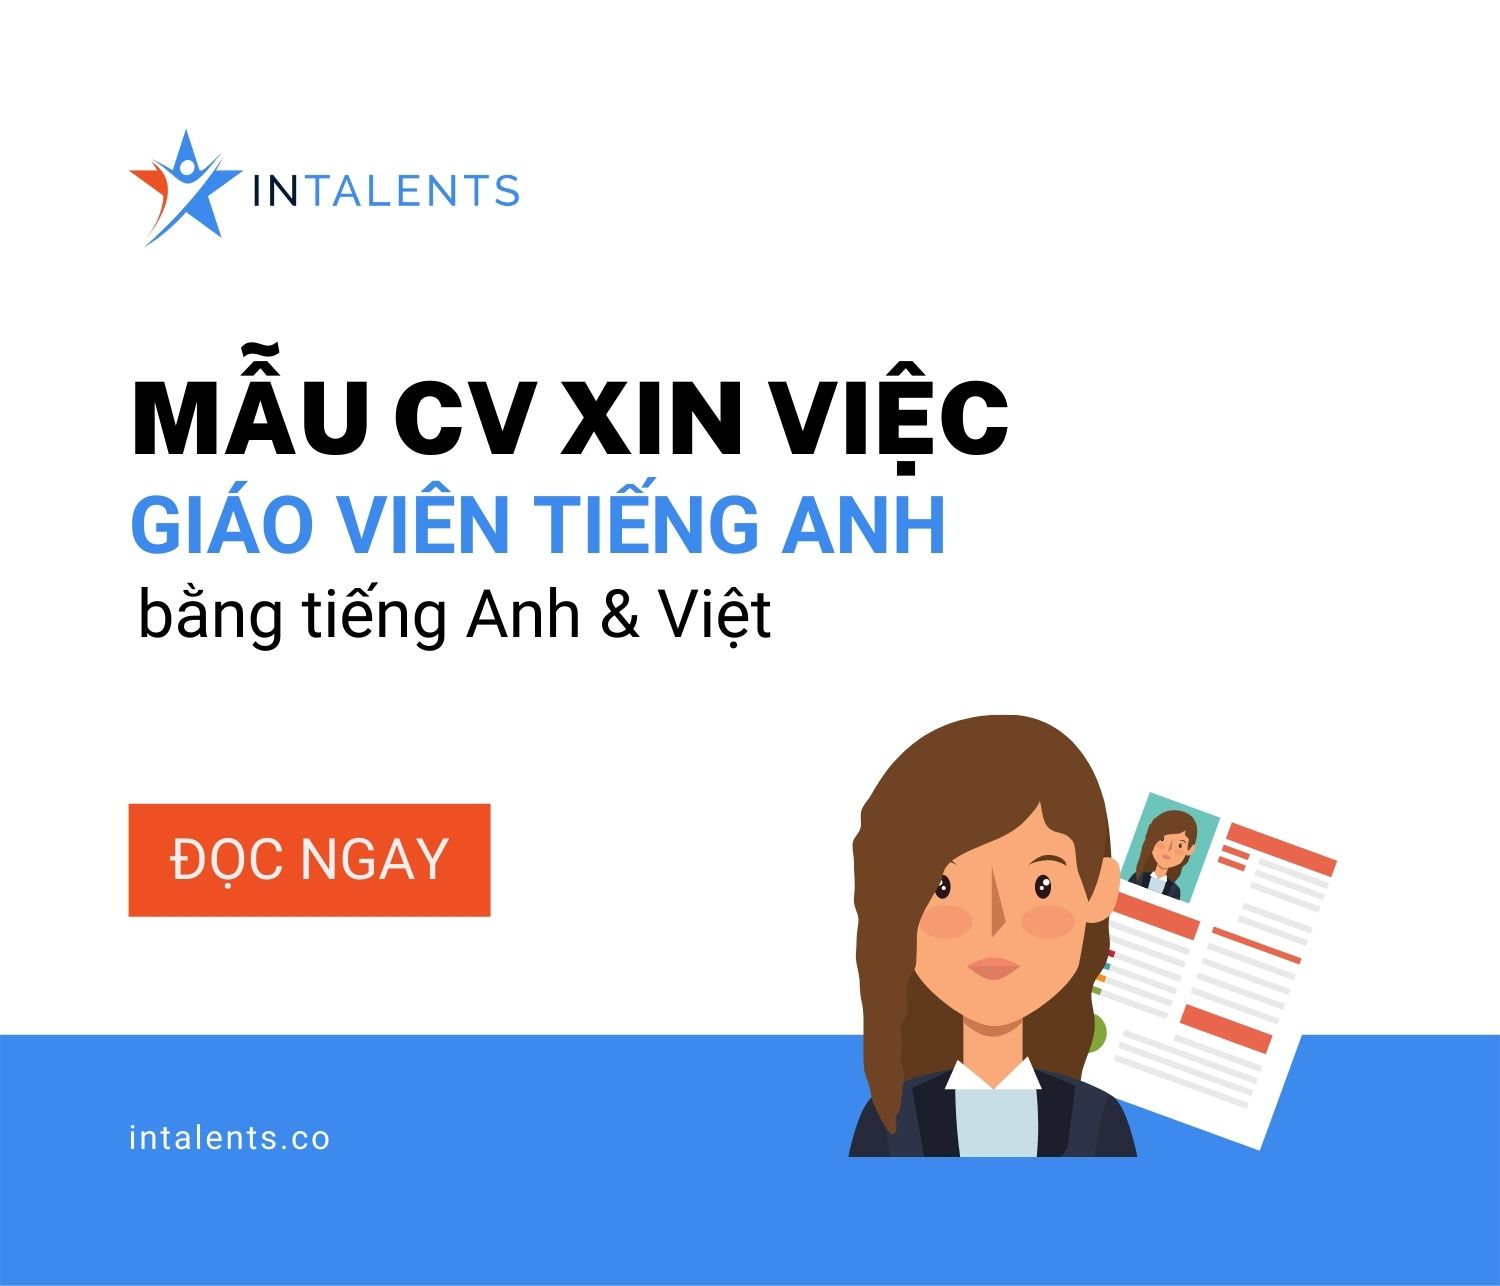 Mẫu CV xin việc giáo viên tiếng Anh bằng tiếng Anh, tiếng Việt